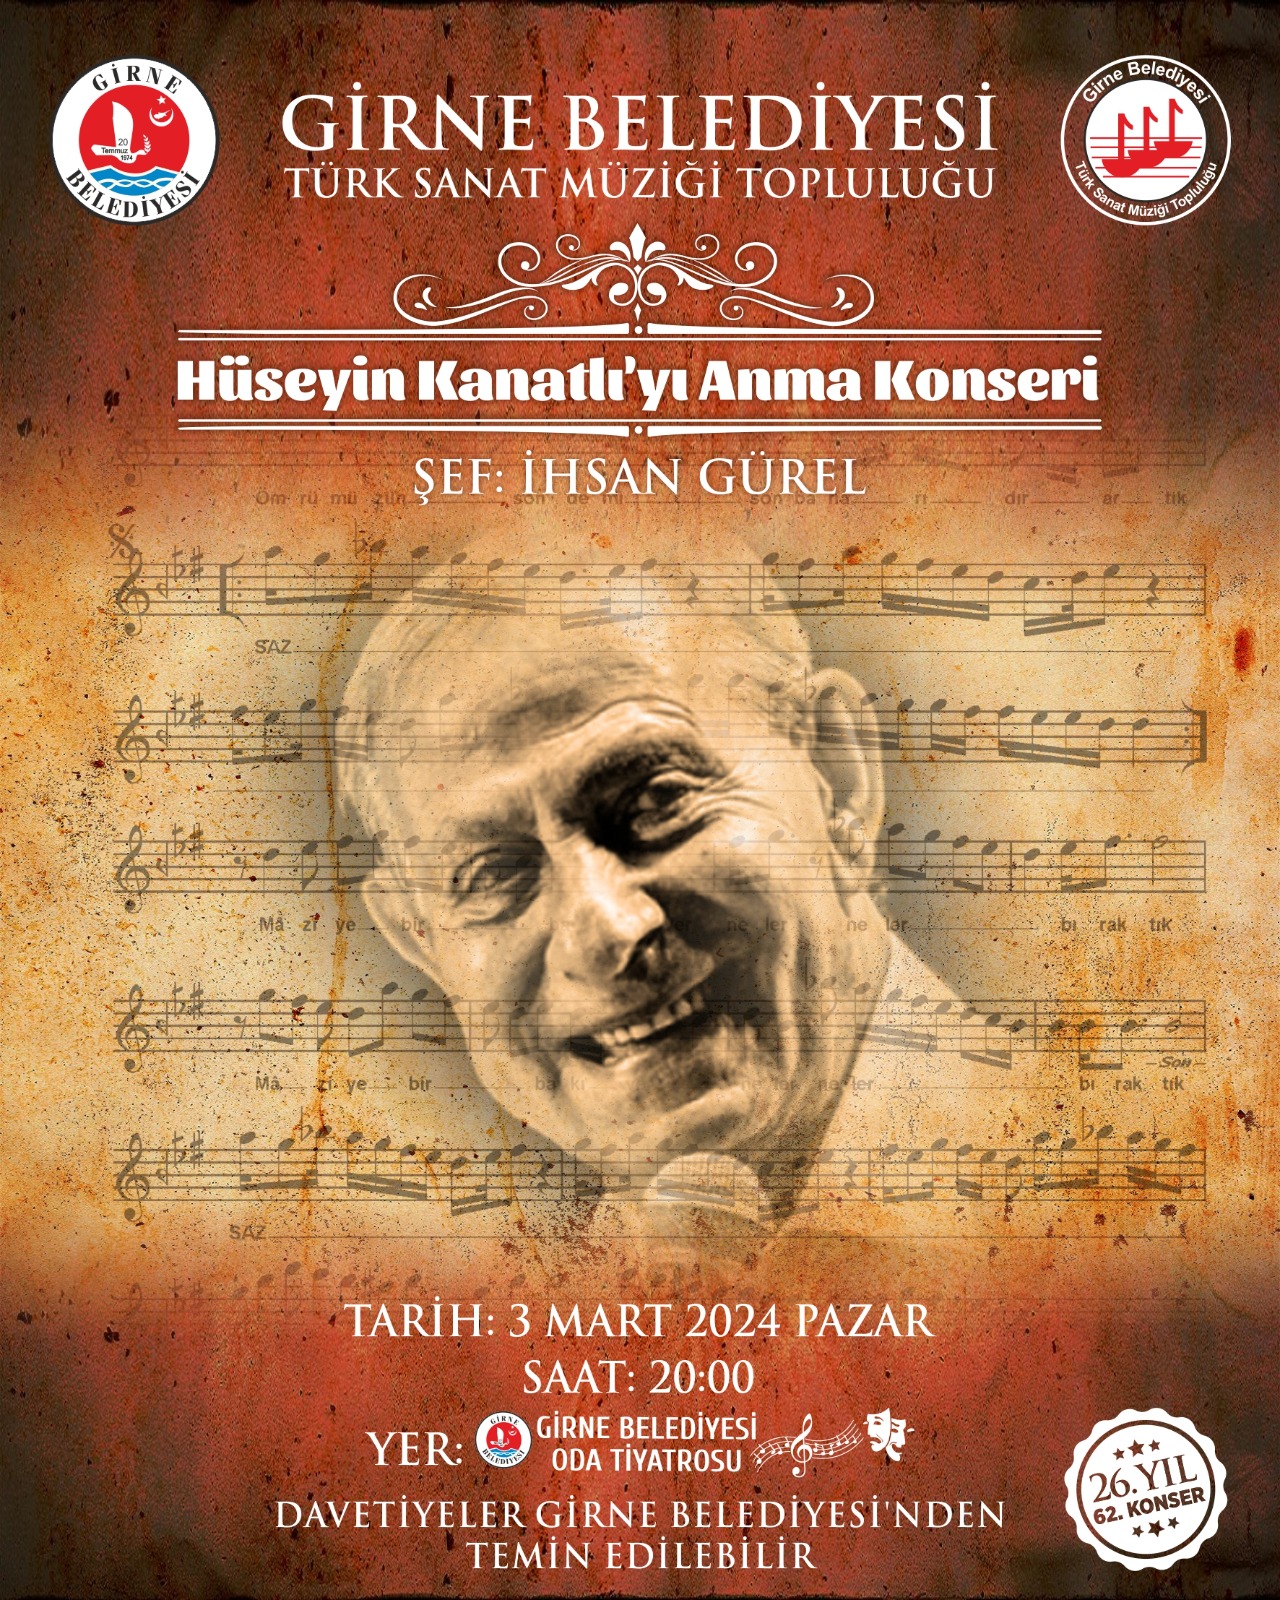 Girne Belediyesi Türk Sanat Müziği Topluluğu, Hüseyin Kanatlı'yı Anma Konseri Düzenliyor